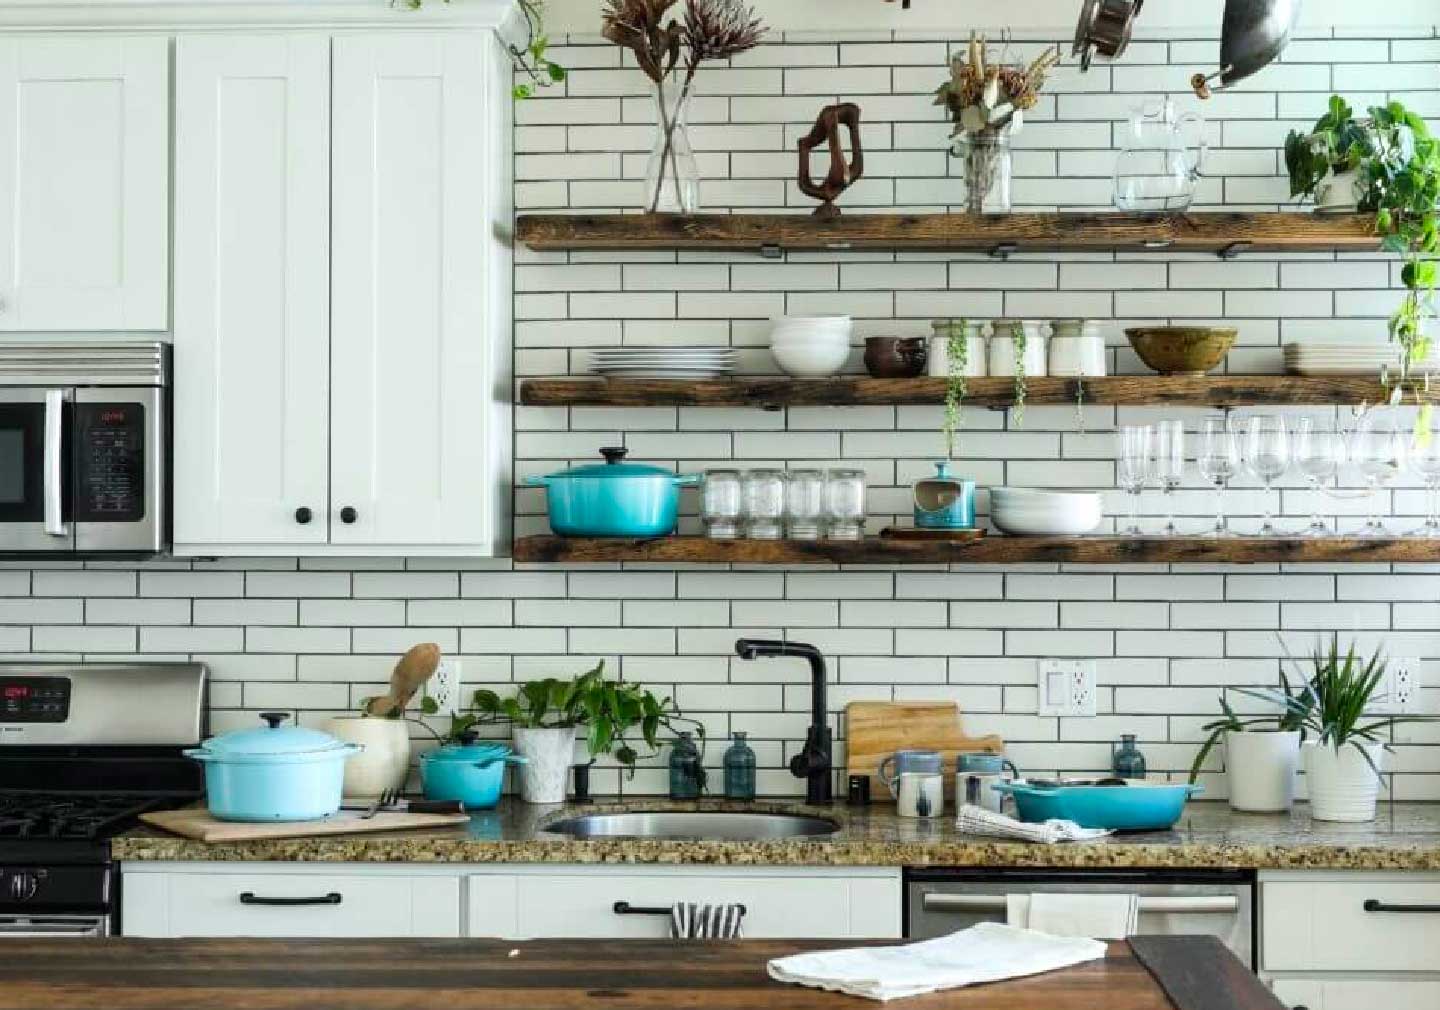 Get your kitchen organized 